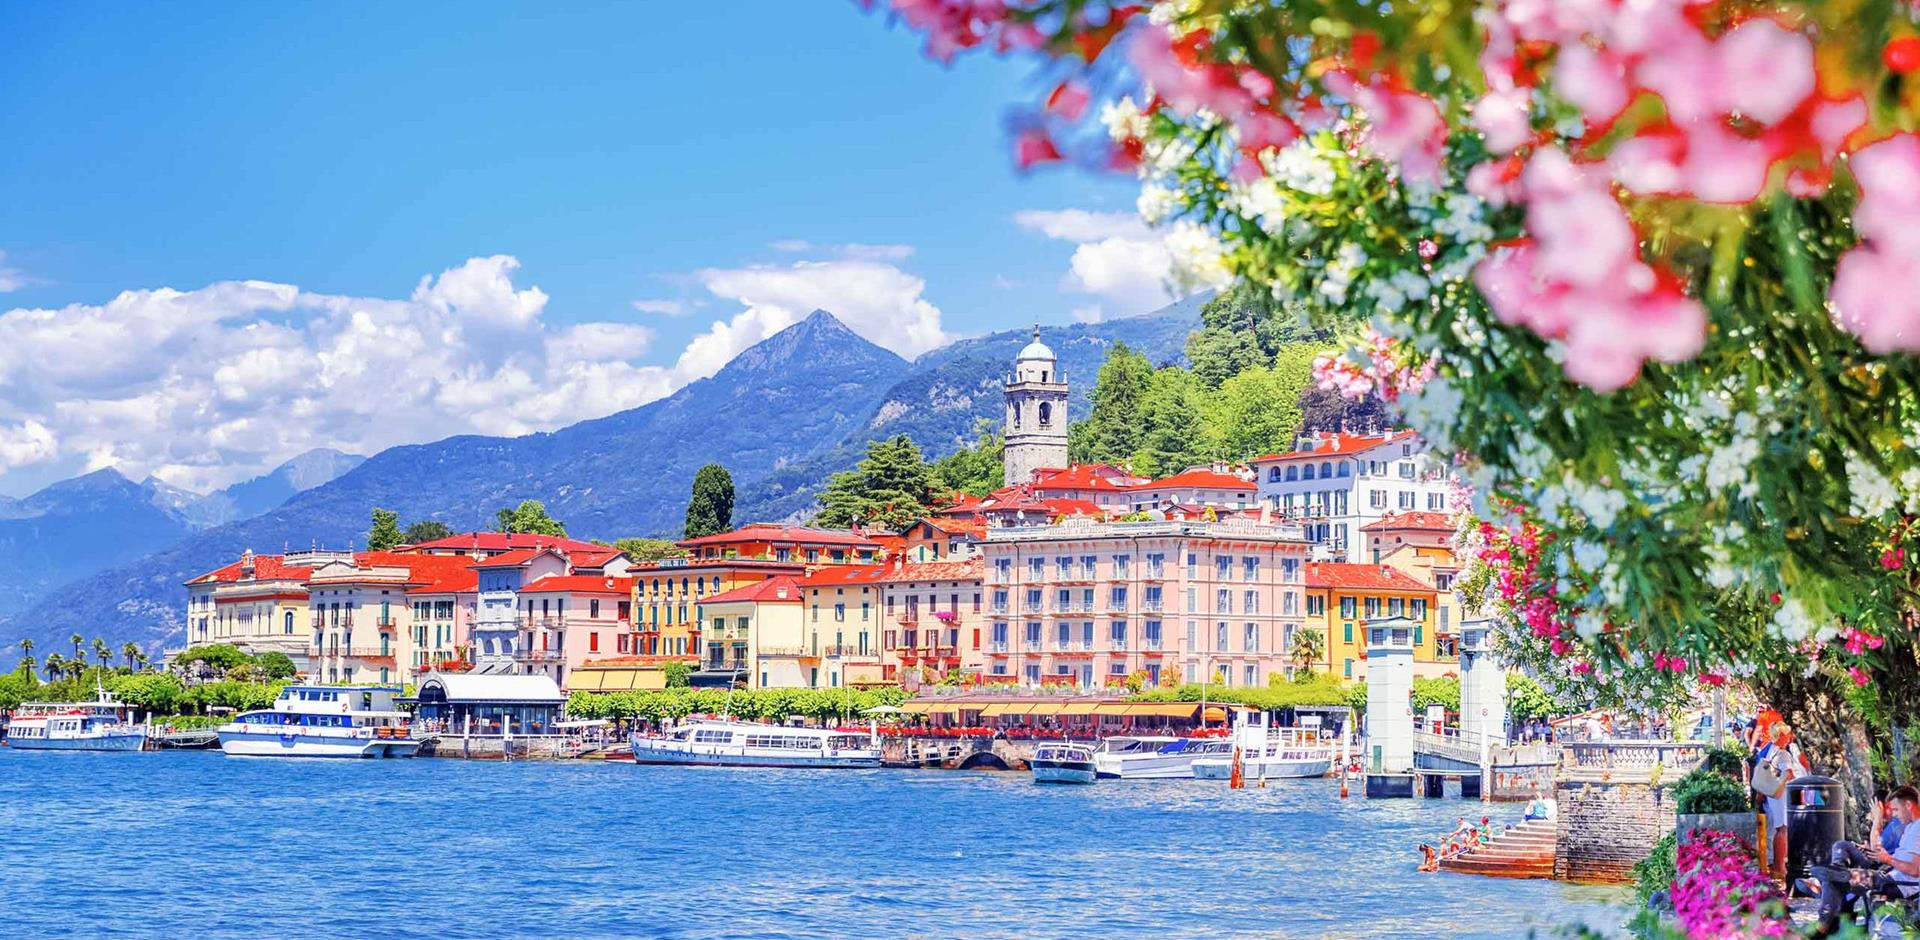 Lake Como, Italy, A&K